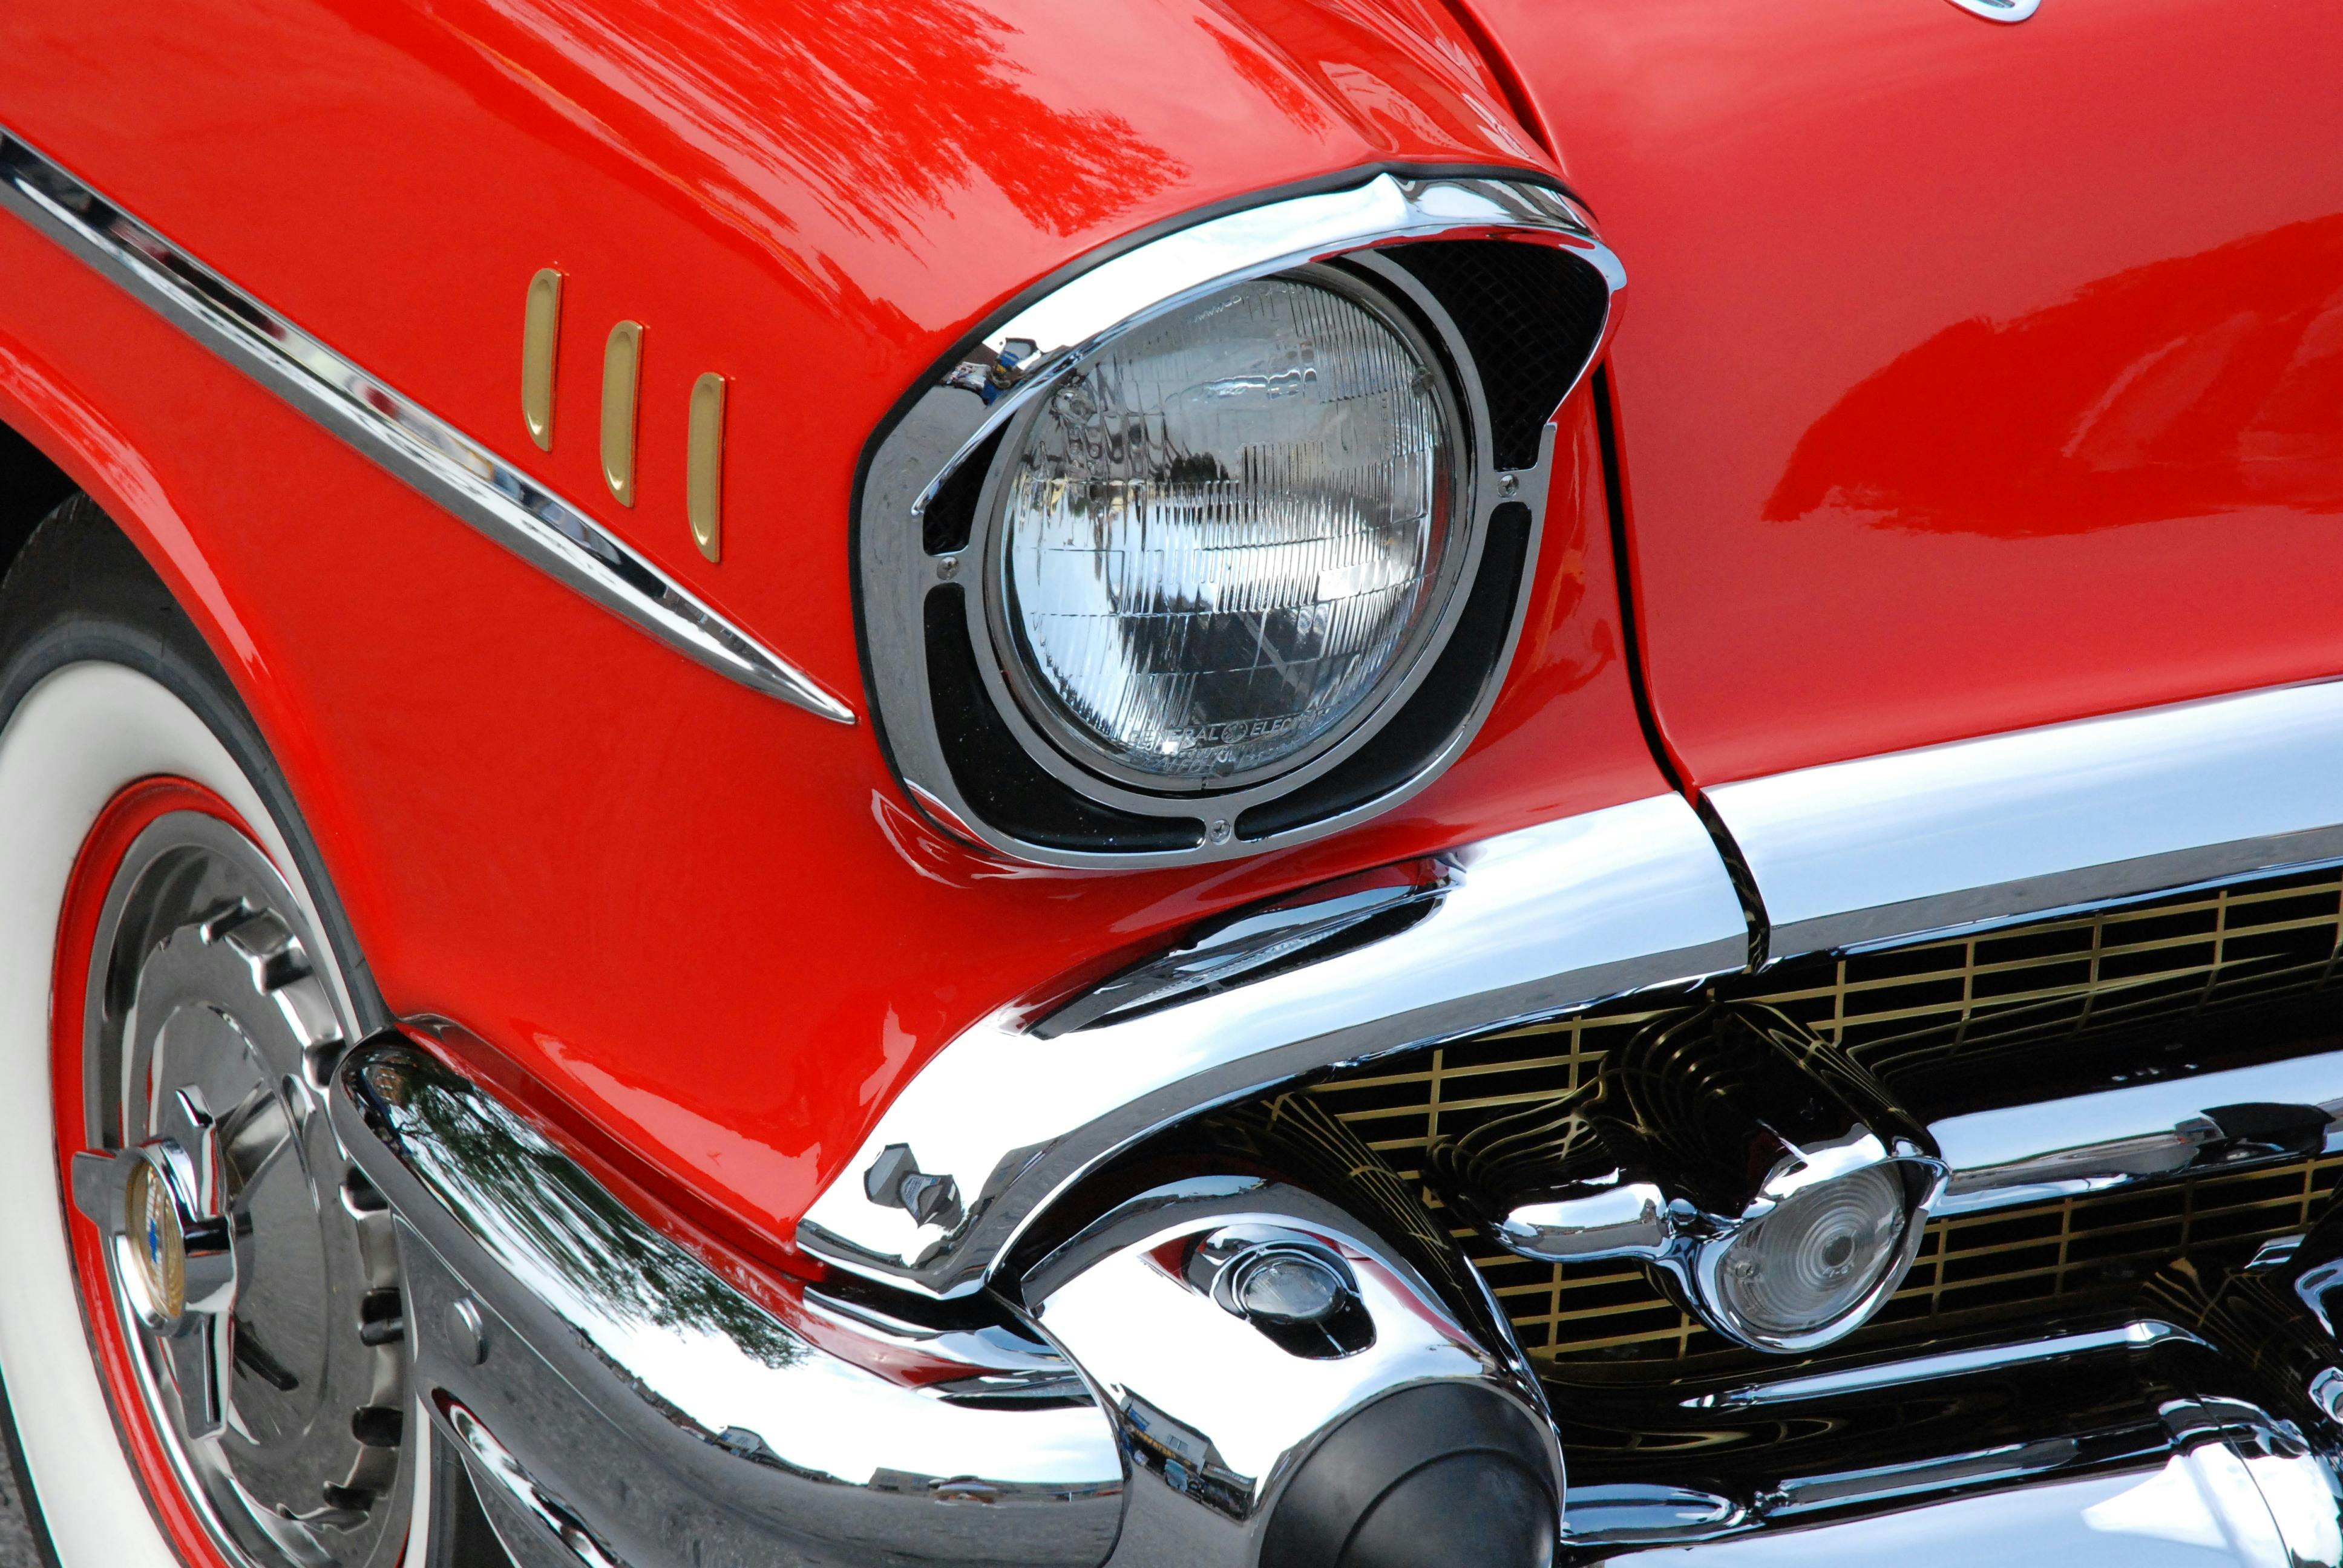 Auto Seitenspiegel Oldtimer - Kostenloses Foto auf Pixabay - Pixabay